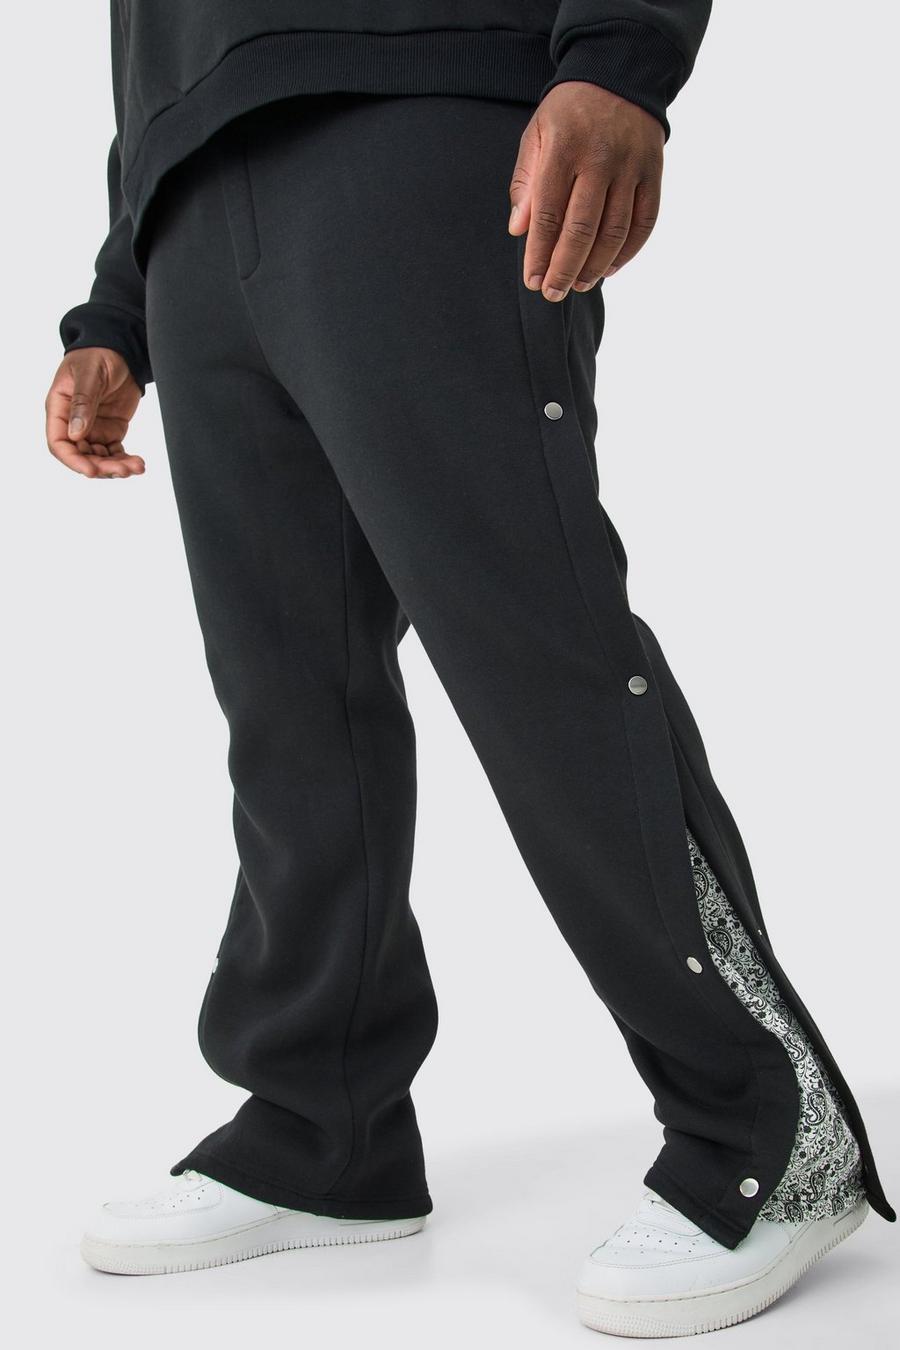 Pantalón deportivo Plus holgado con panel lateral y botones de presión, Black image number 1